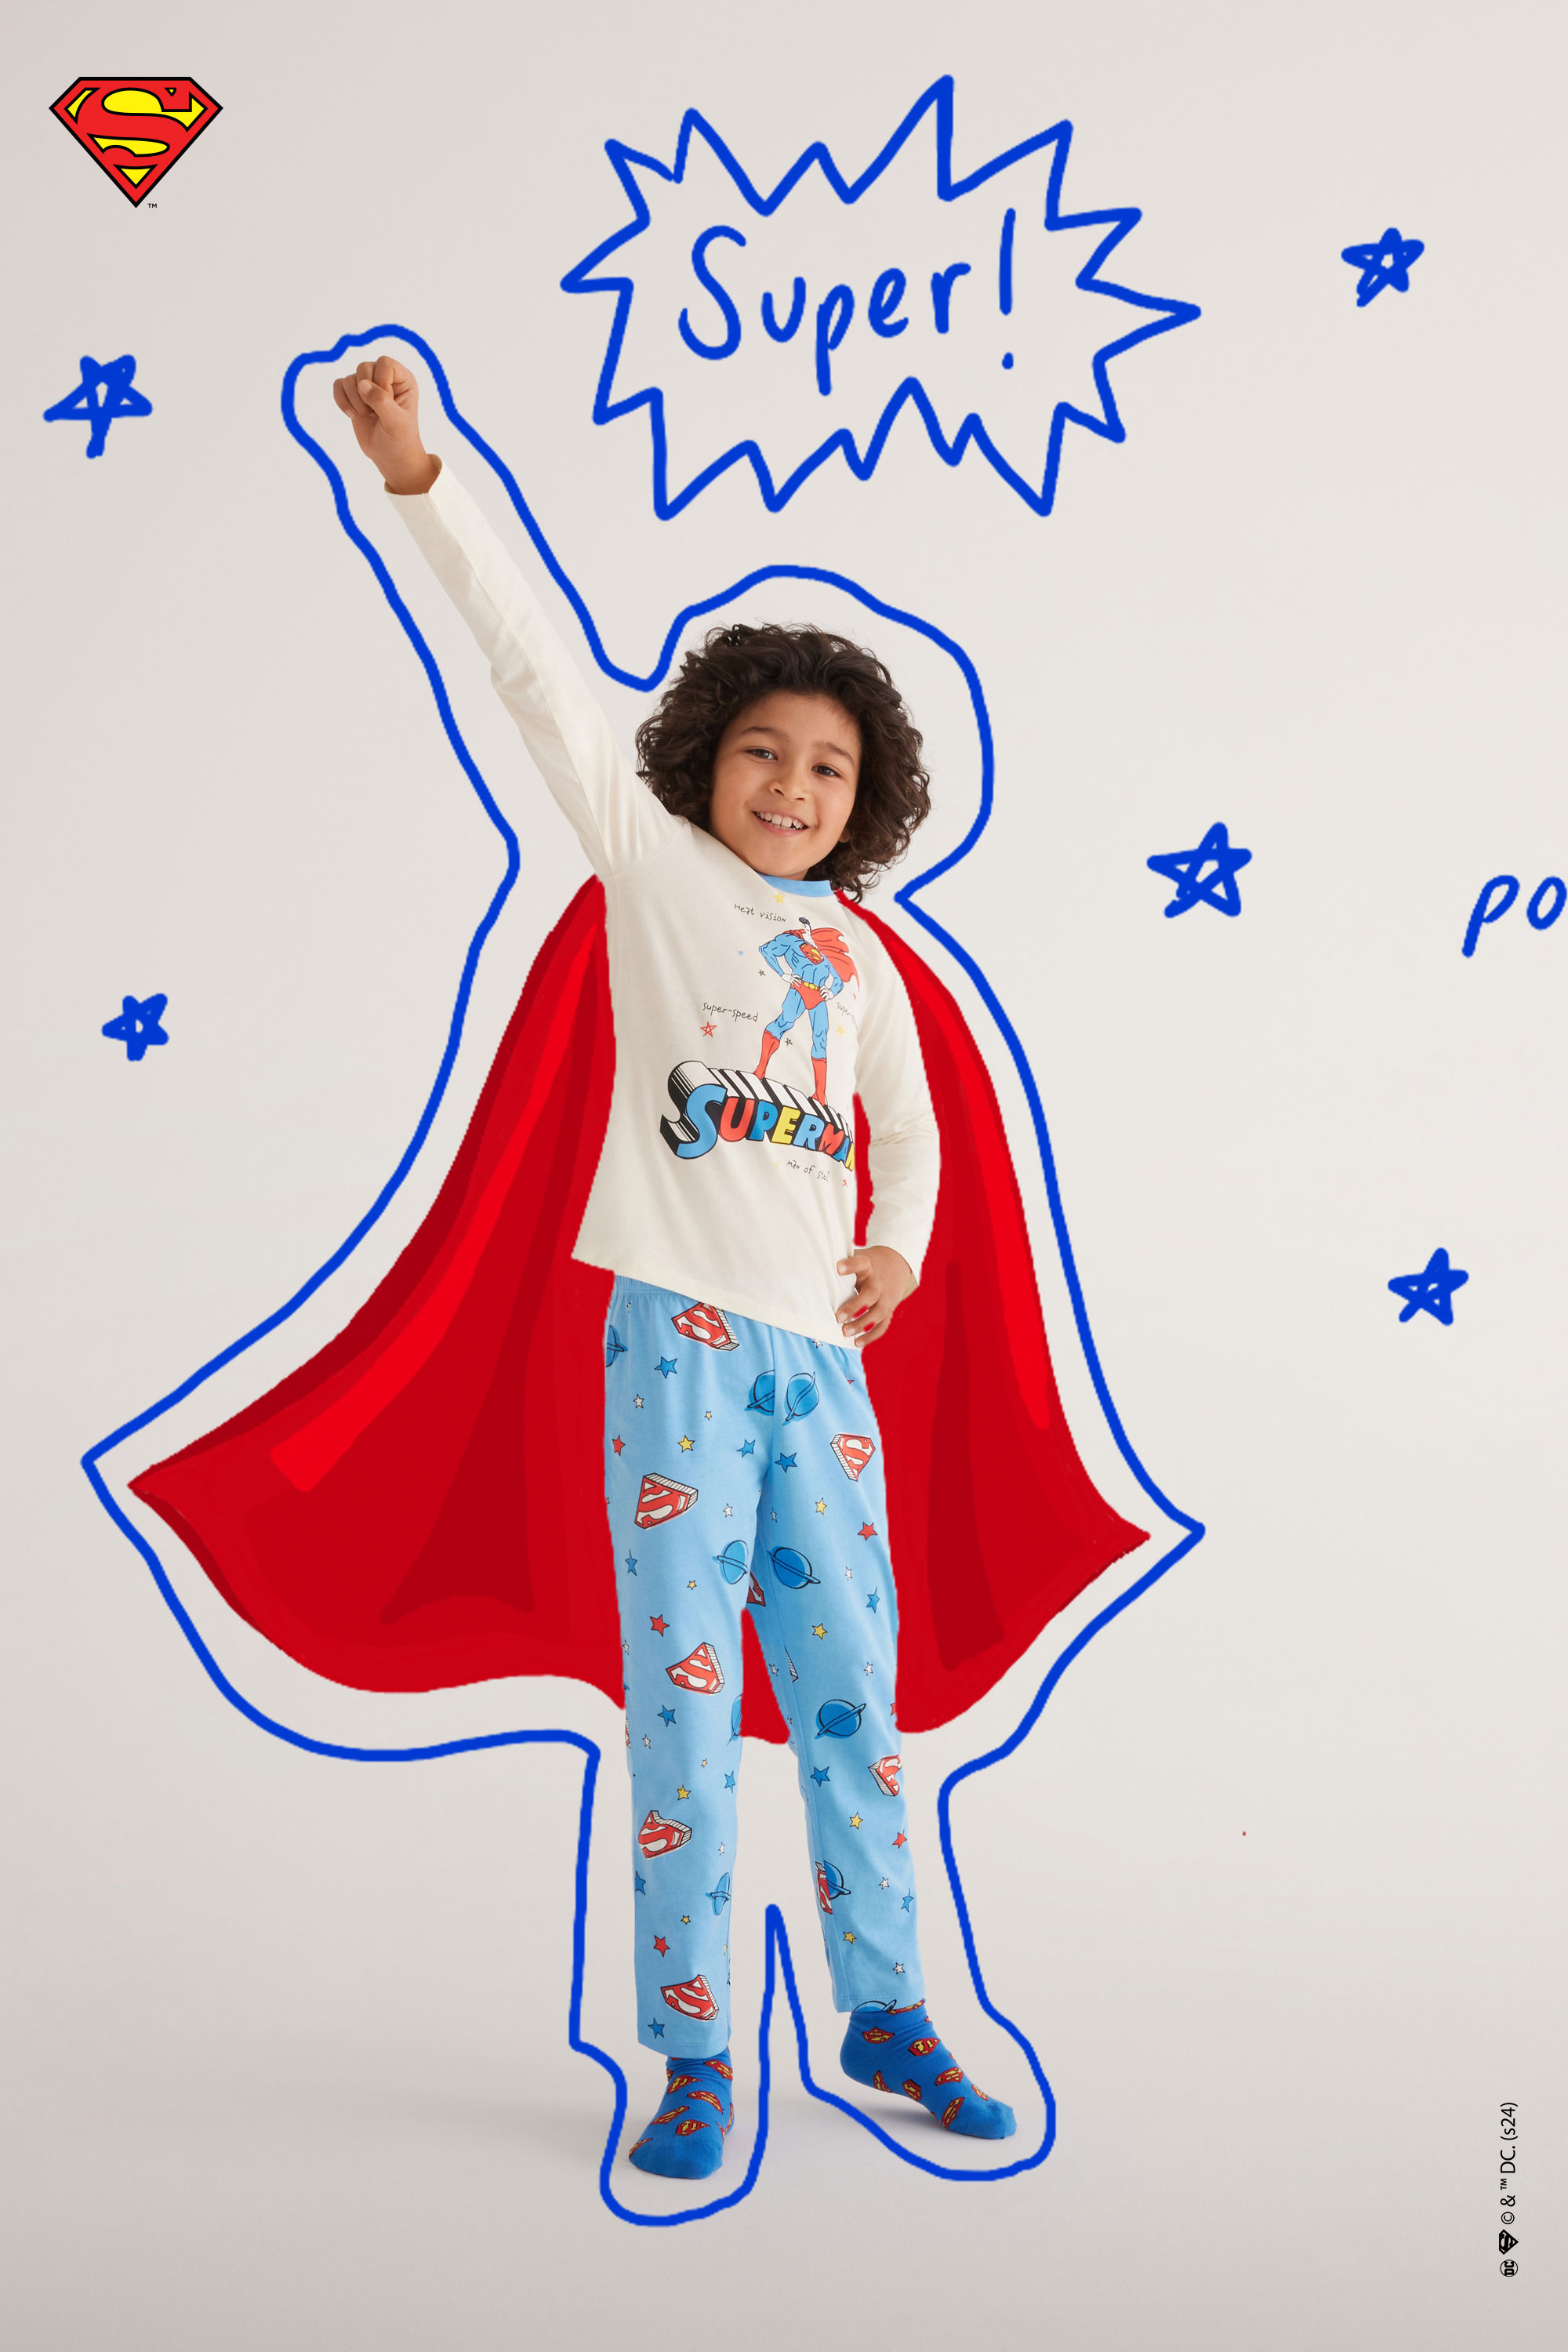 Pijama Comprido em Algodão com Estampado Superman Menino